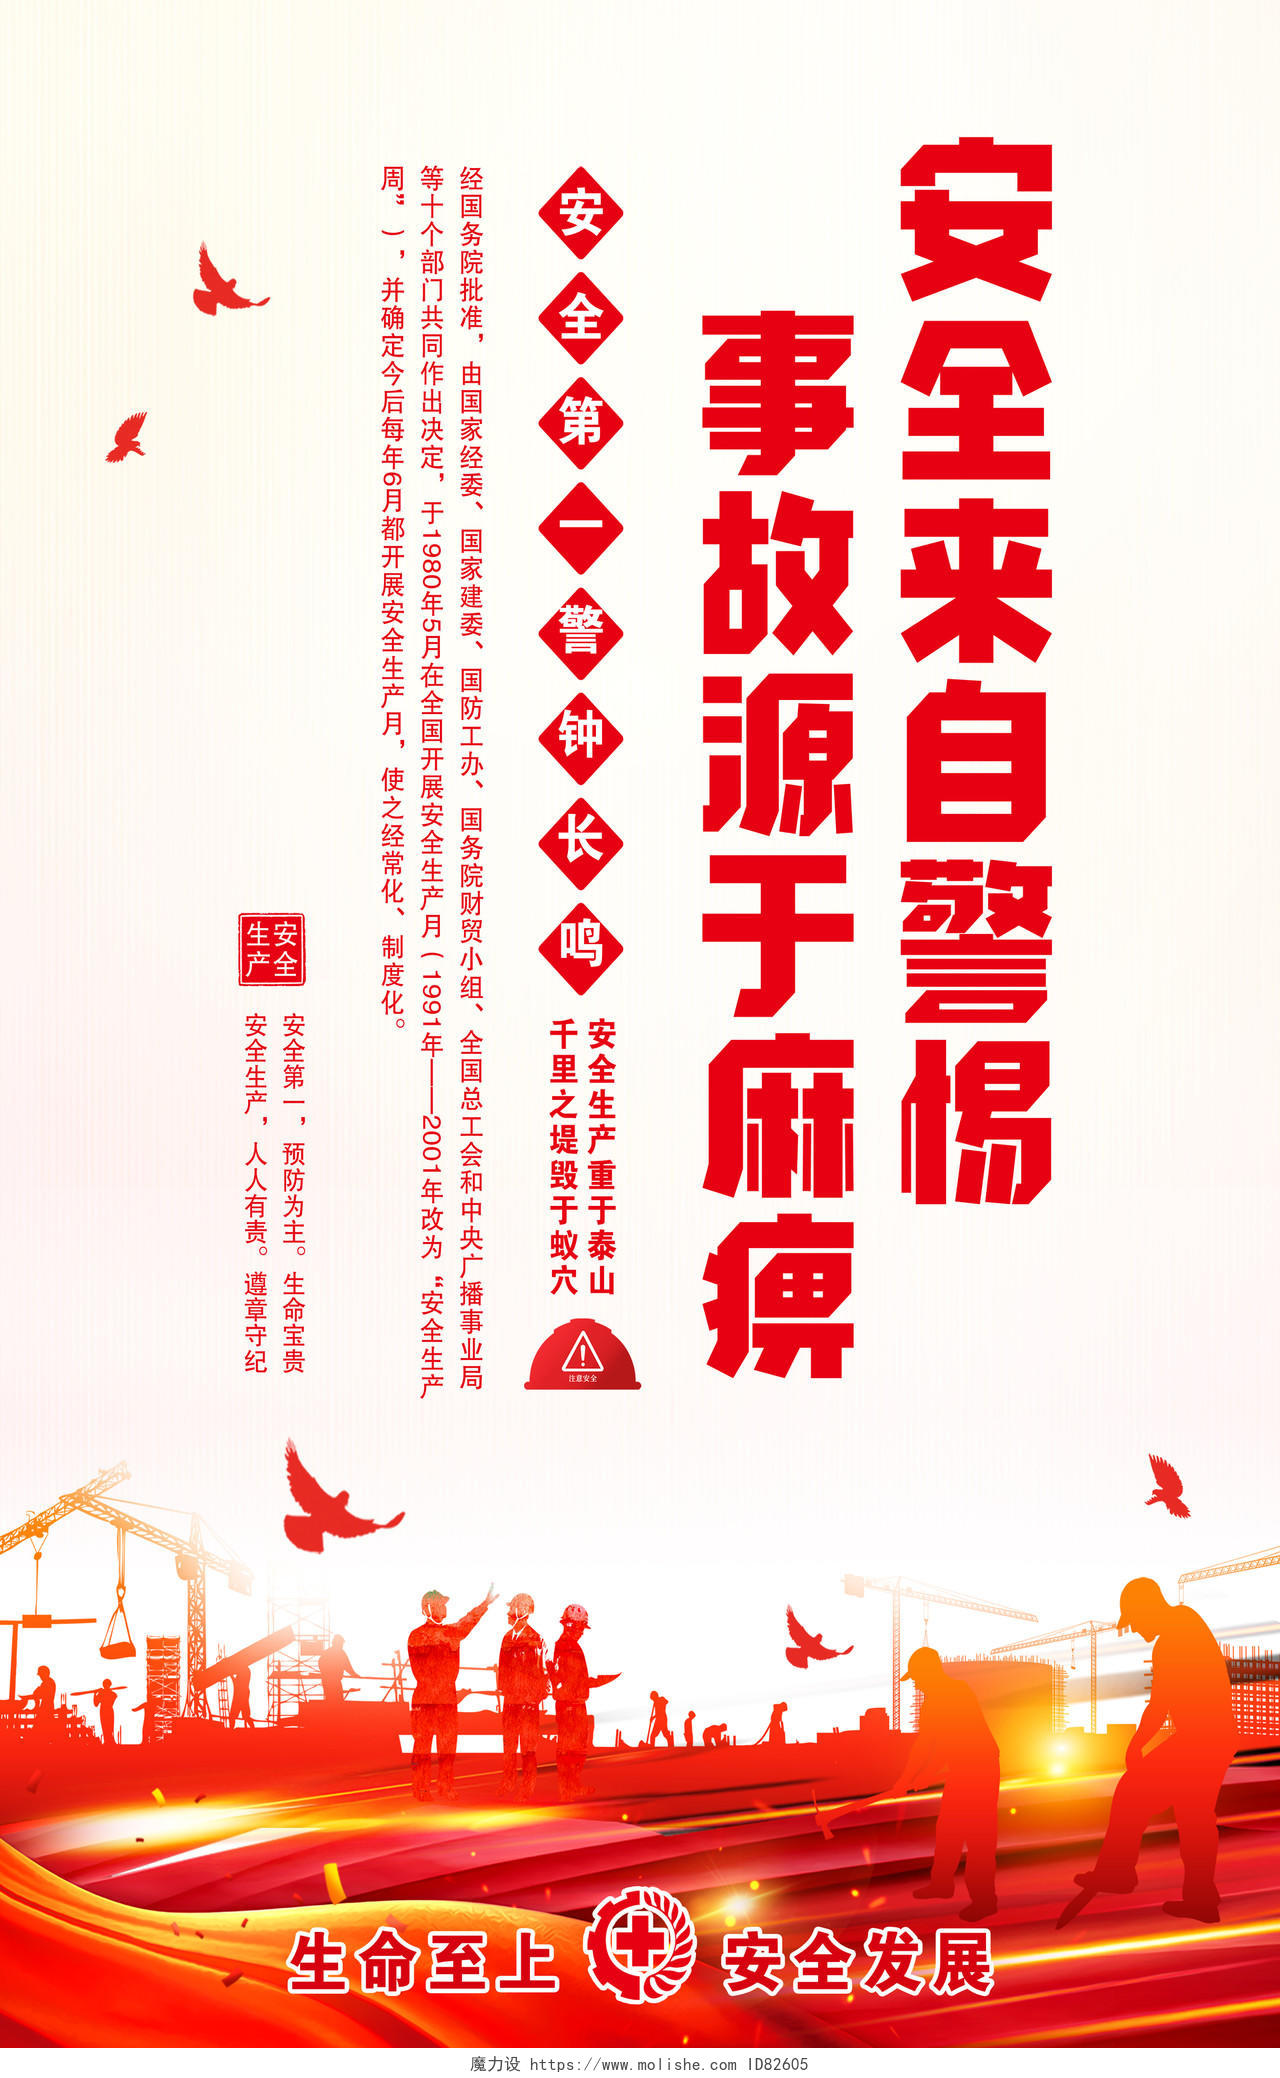 2020年全国安全生产月安全生产标识宣传海报建筑工地海报